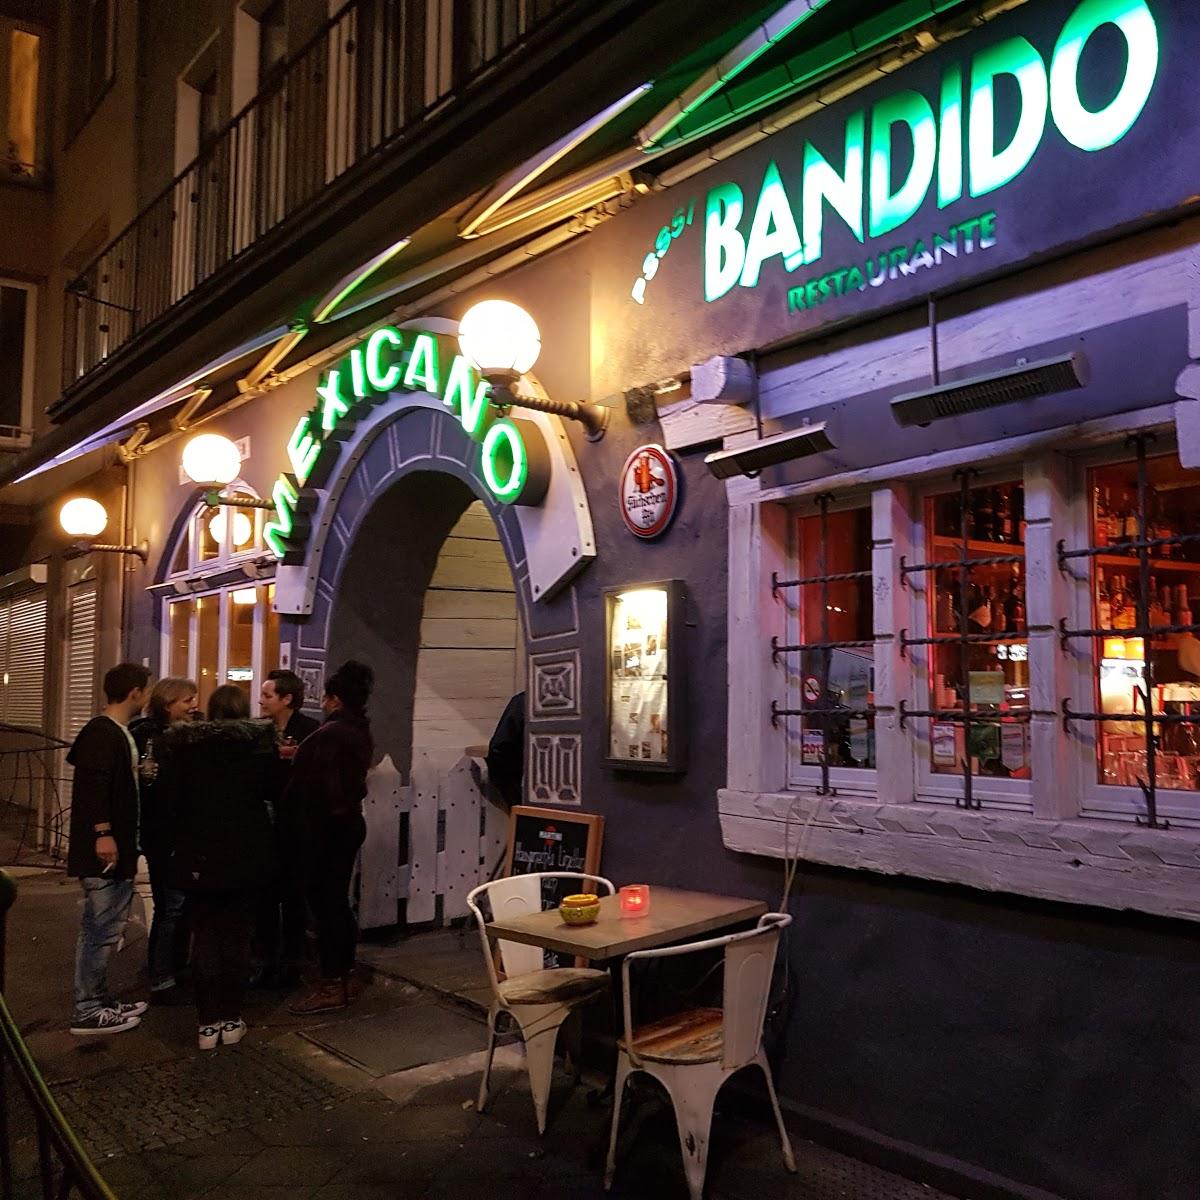 Restaurant "Restaurant Pssst Bandido - Restaurante Mexicano" in  Düsseldorf